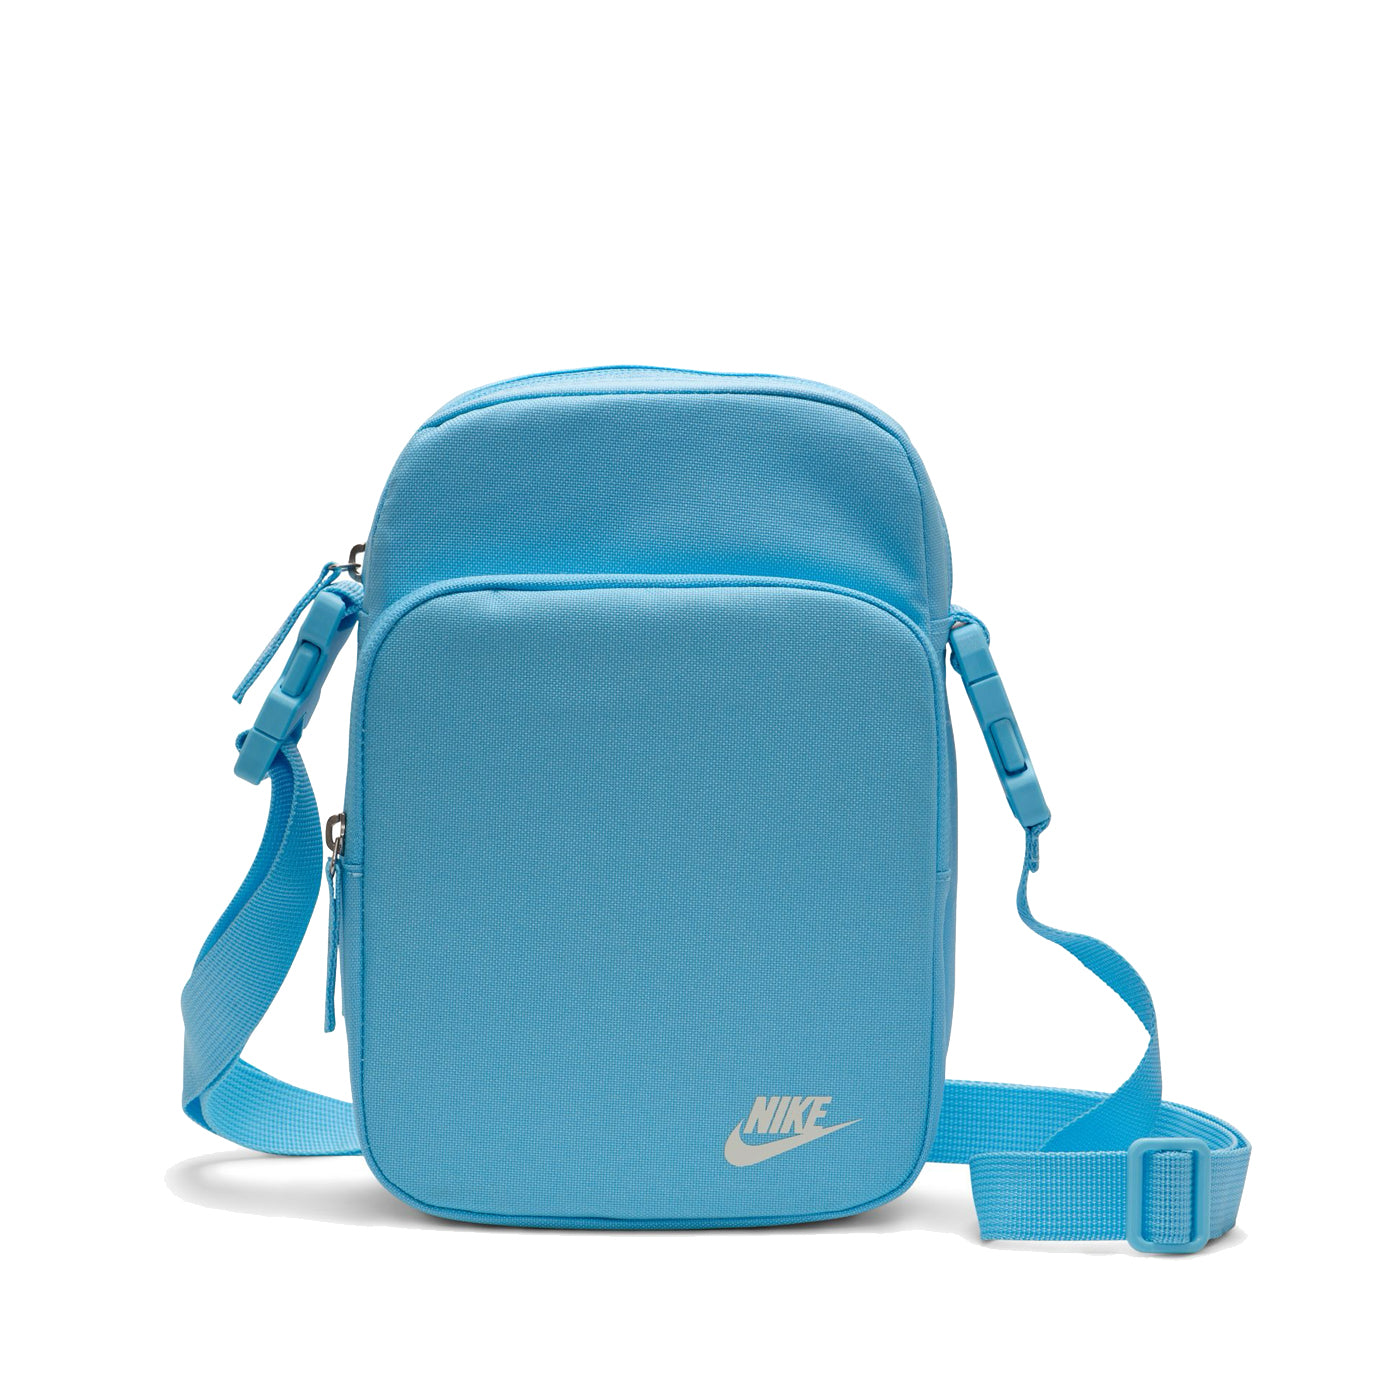 Nike Heritage Shoulder Bag - Aquarius Blue/Sail